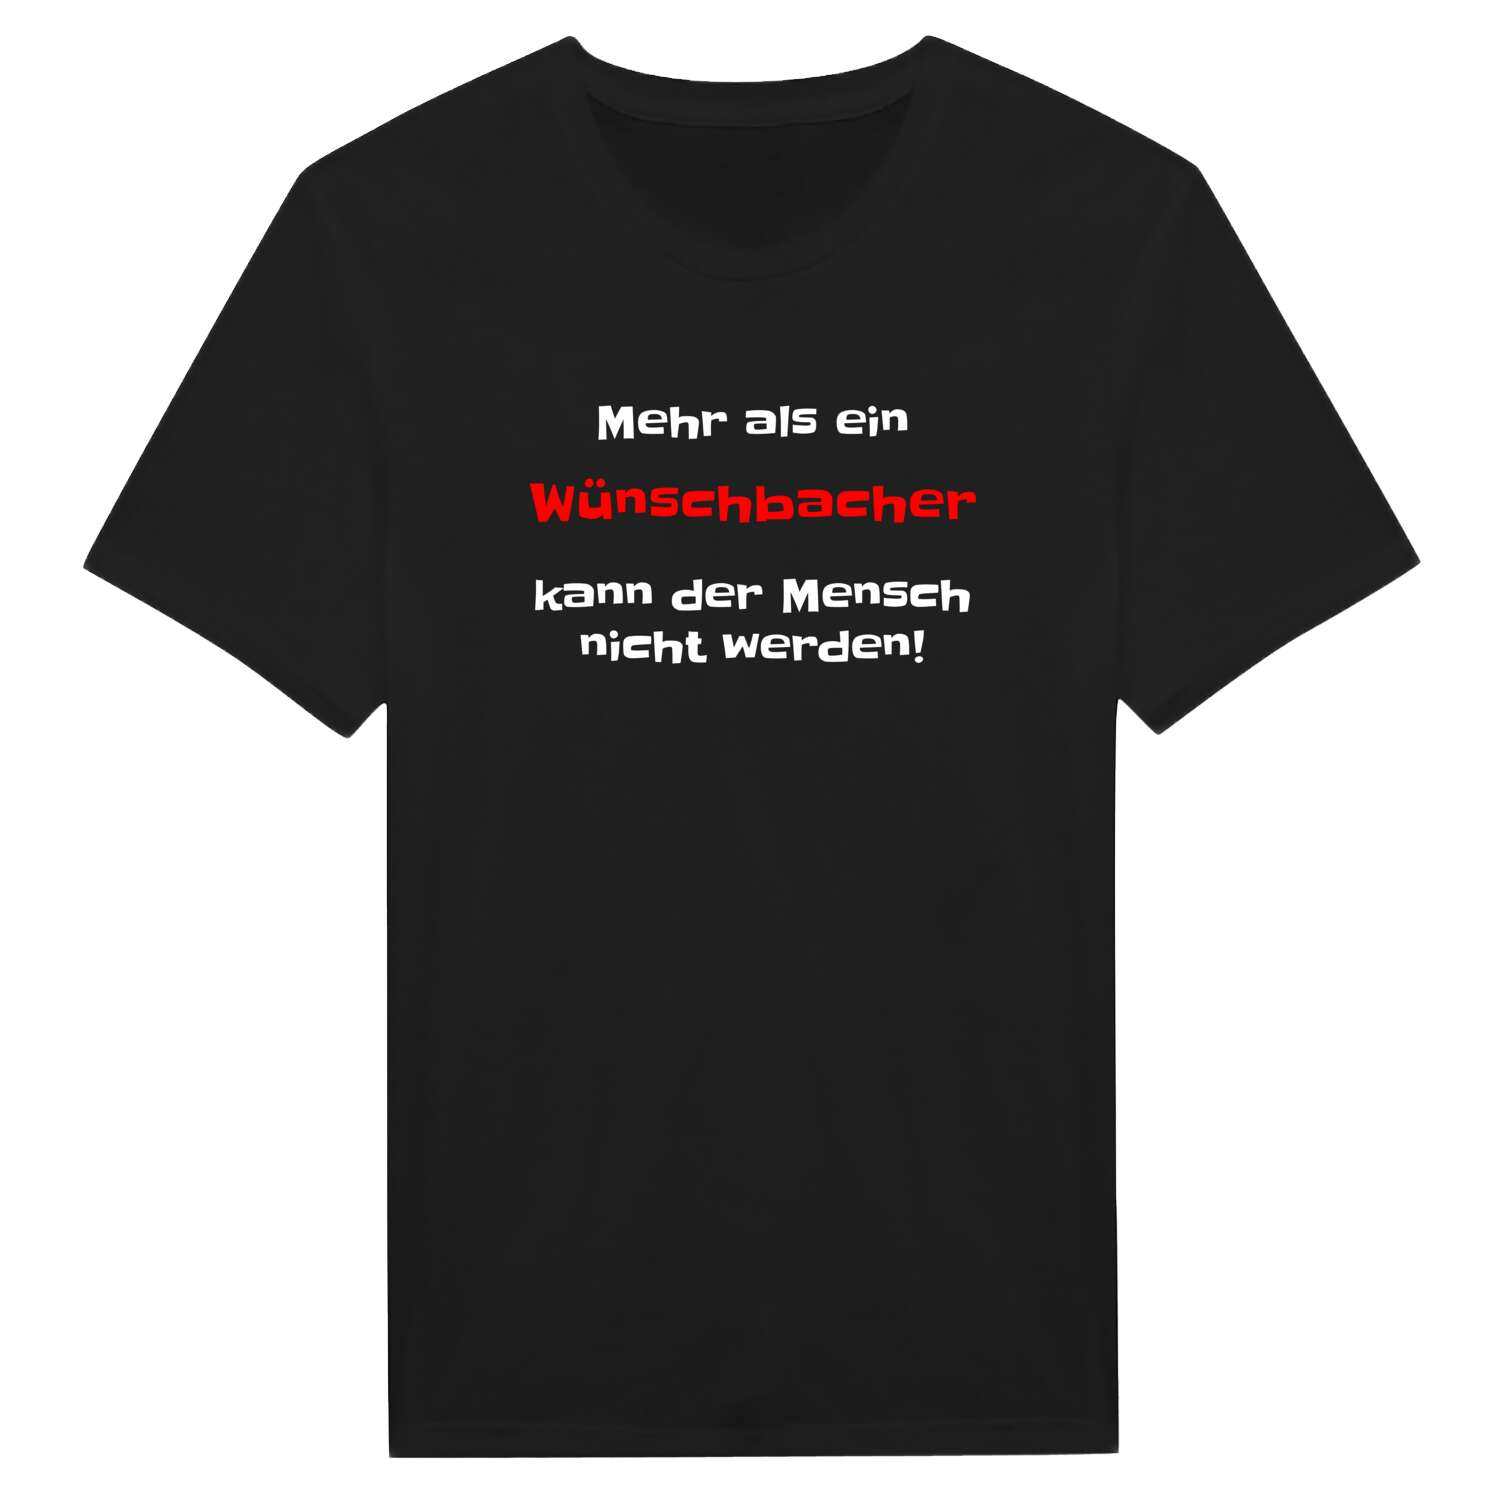 Wünschbach T-Shirt »Mehr als ein«